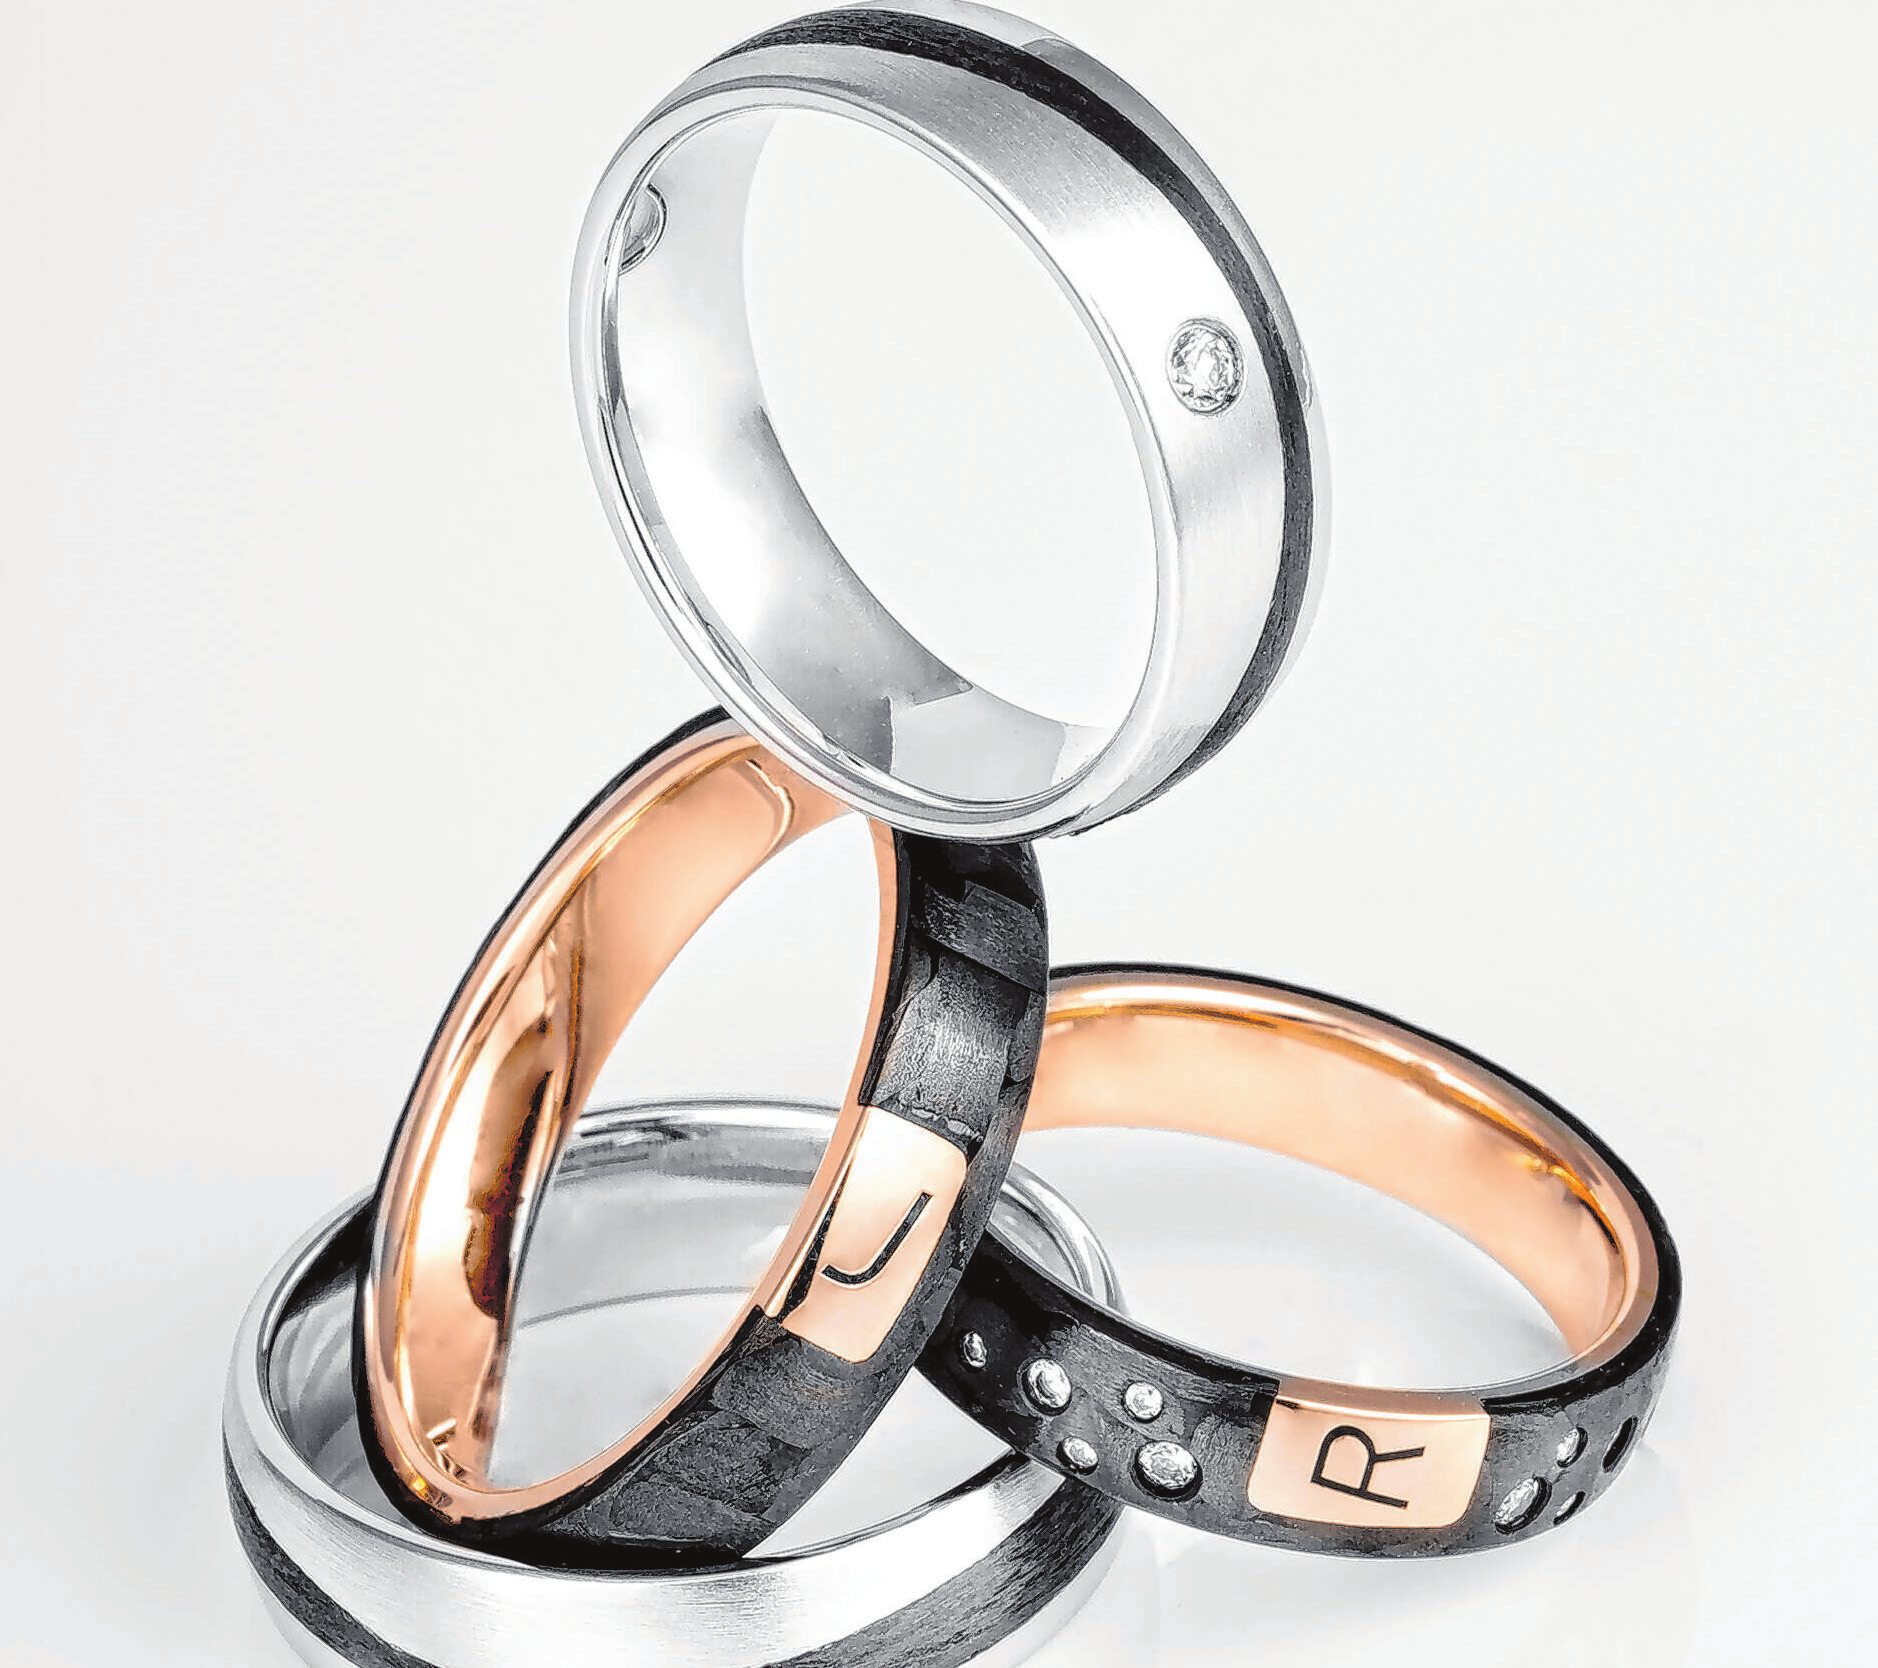 Beliebt sind Ring-Designs mit schwarzen Linien und Mustern.